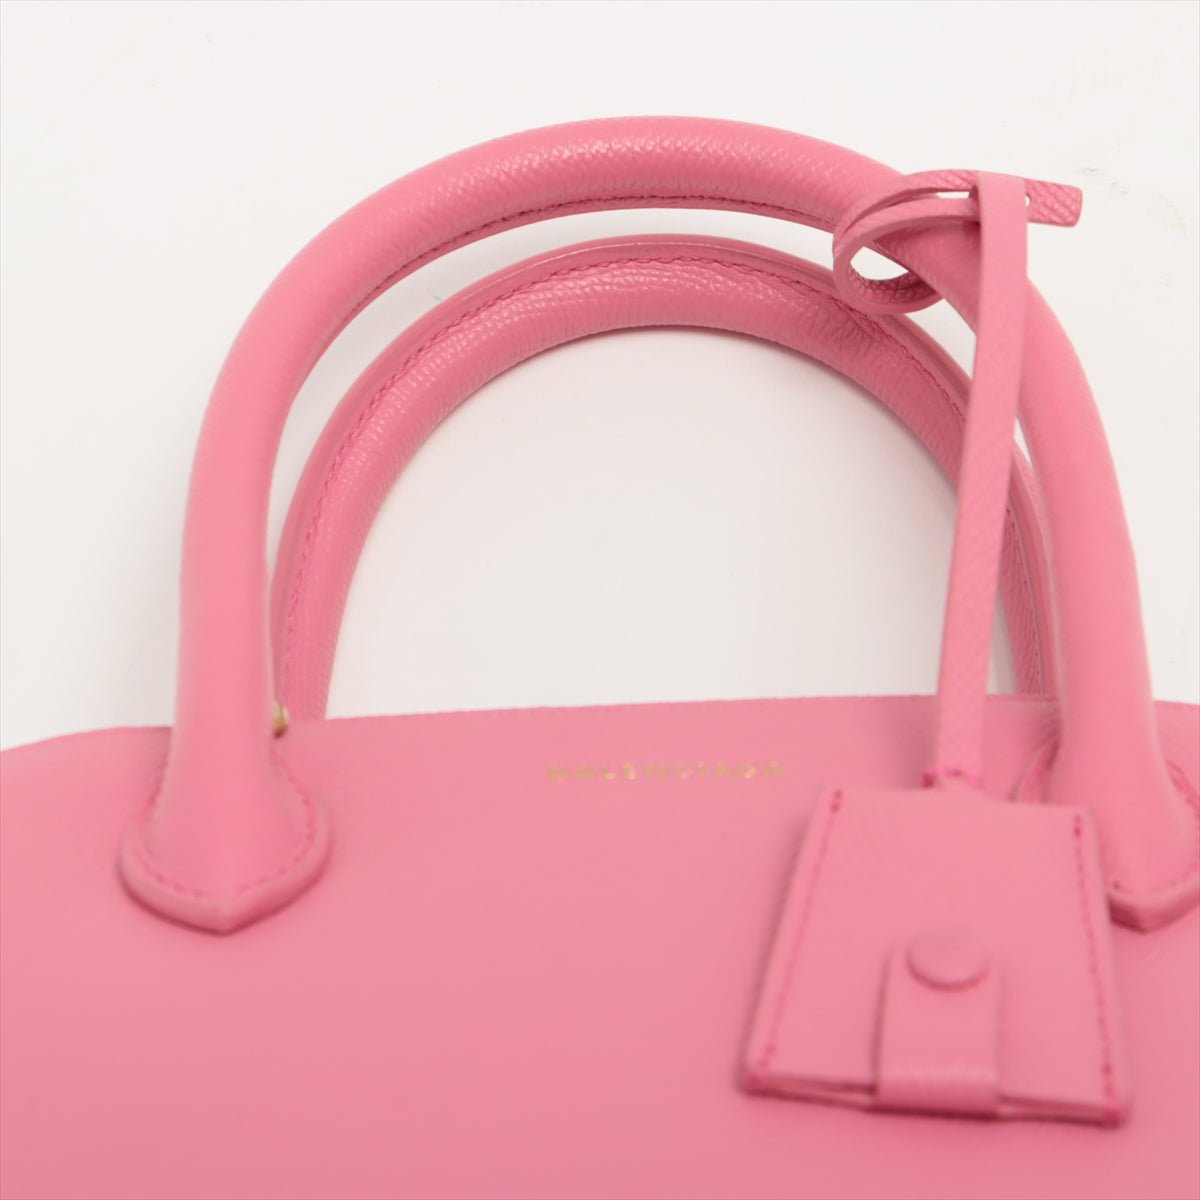 Balenciaga Ville Xxs Top Handle Bag in Pink